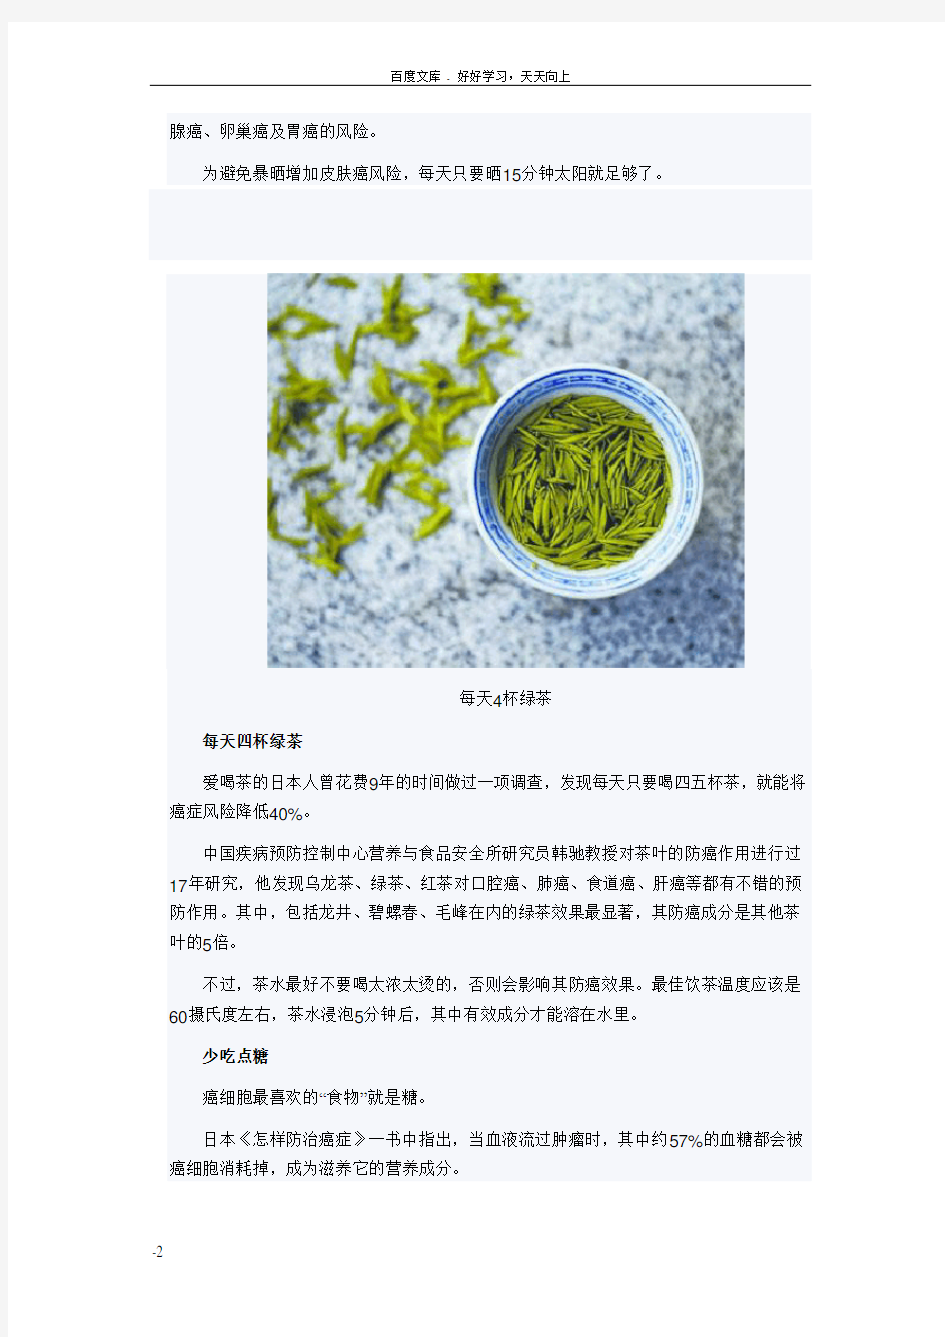 国际抗癌联盟公布5大防癌秘诀喝杯绿茶